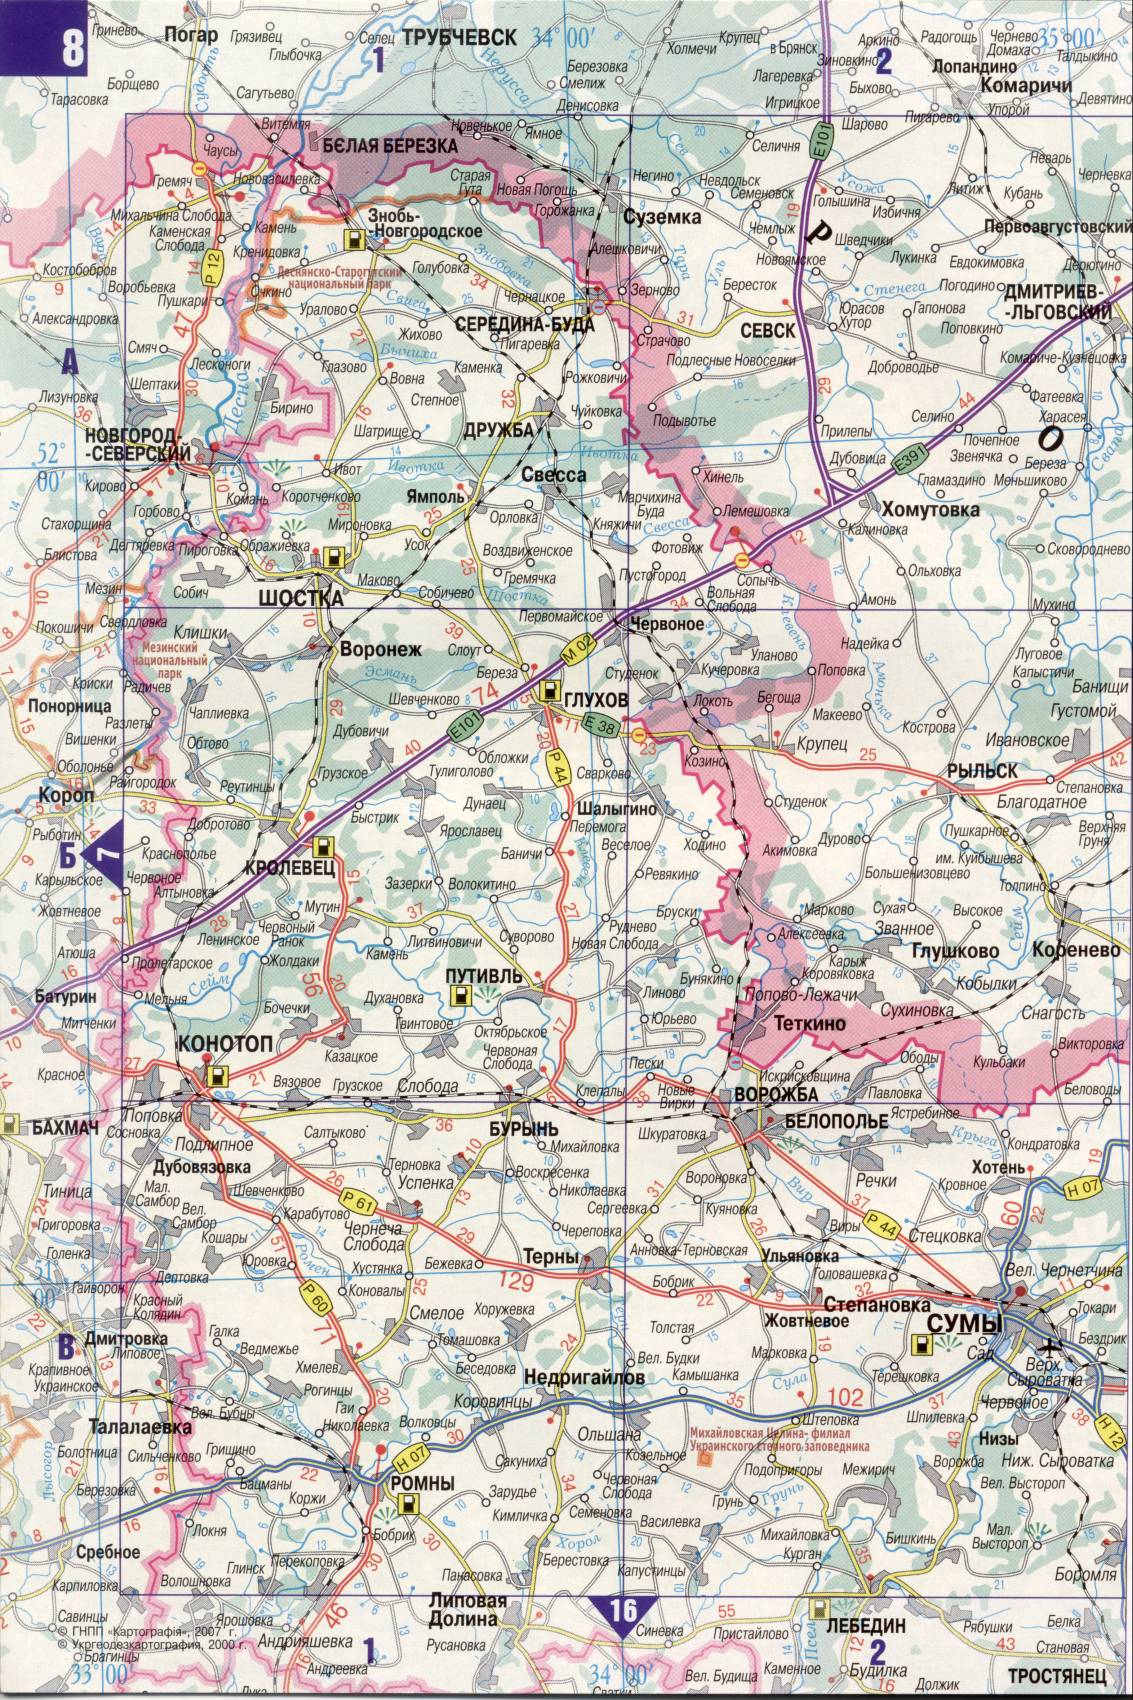 Карта Украины. Подробная карта дорог Украина из автомобильног атласа. скачать бесплатно, G0